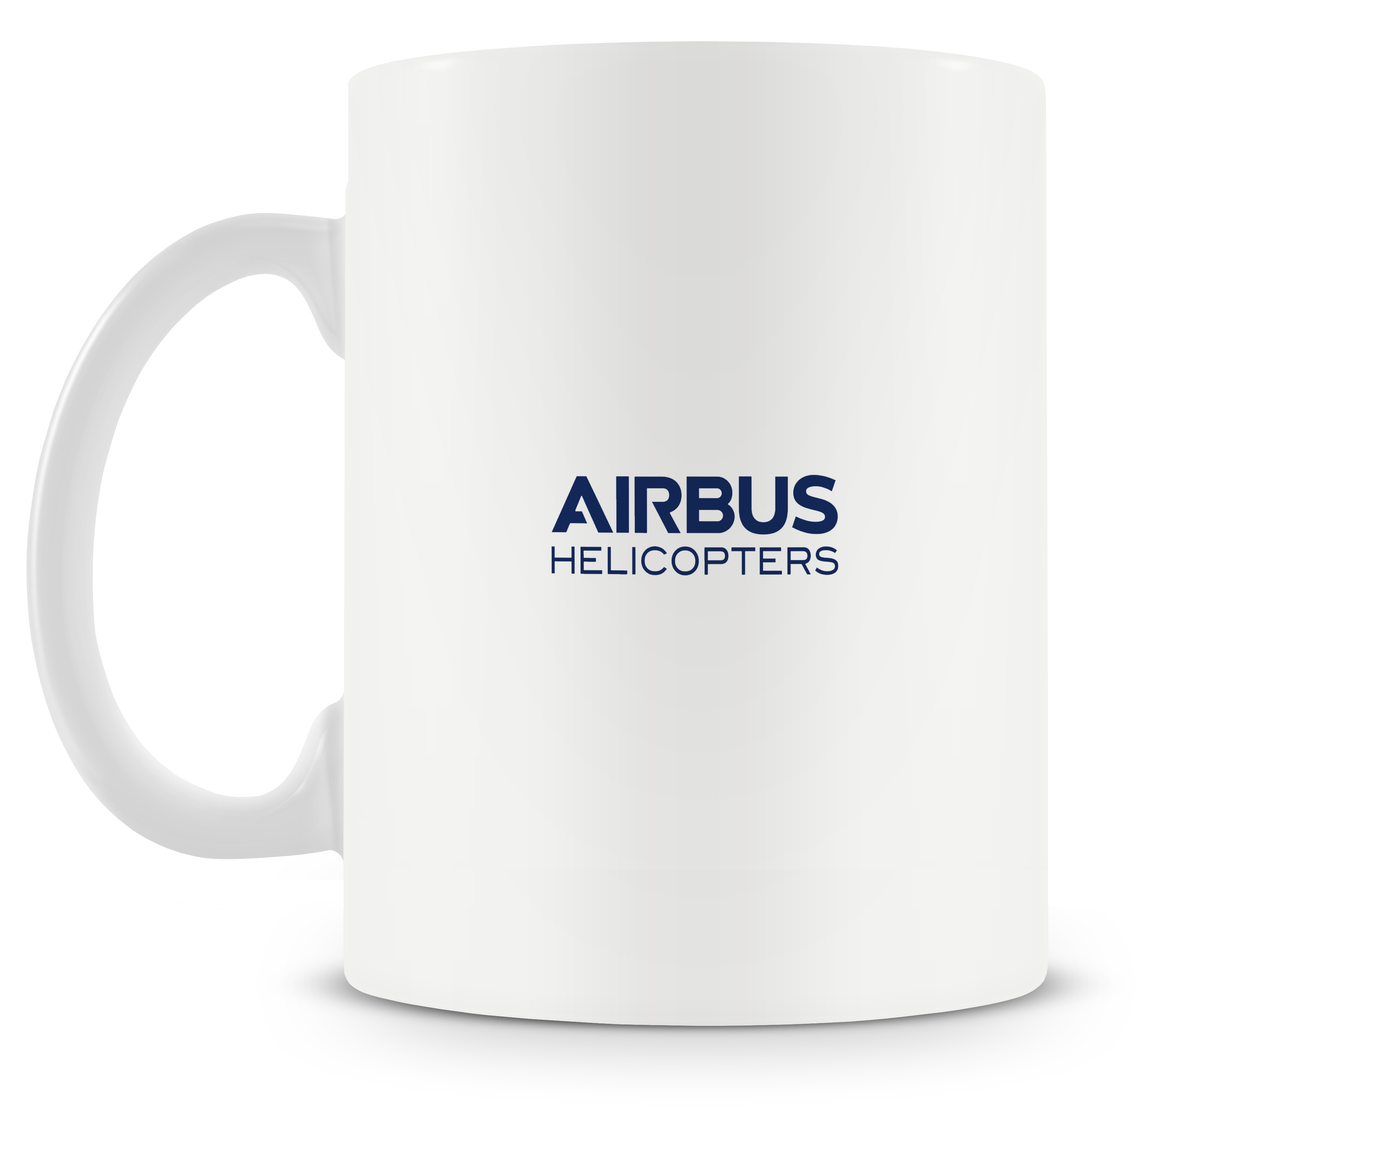 Airbus H160 Mug - Aircraft Mugs